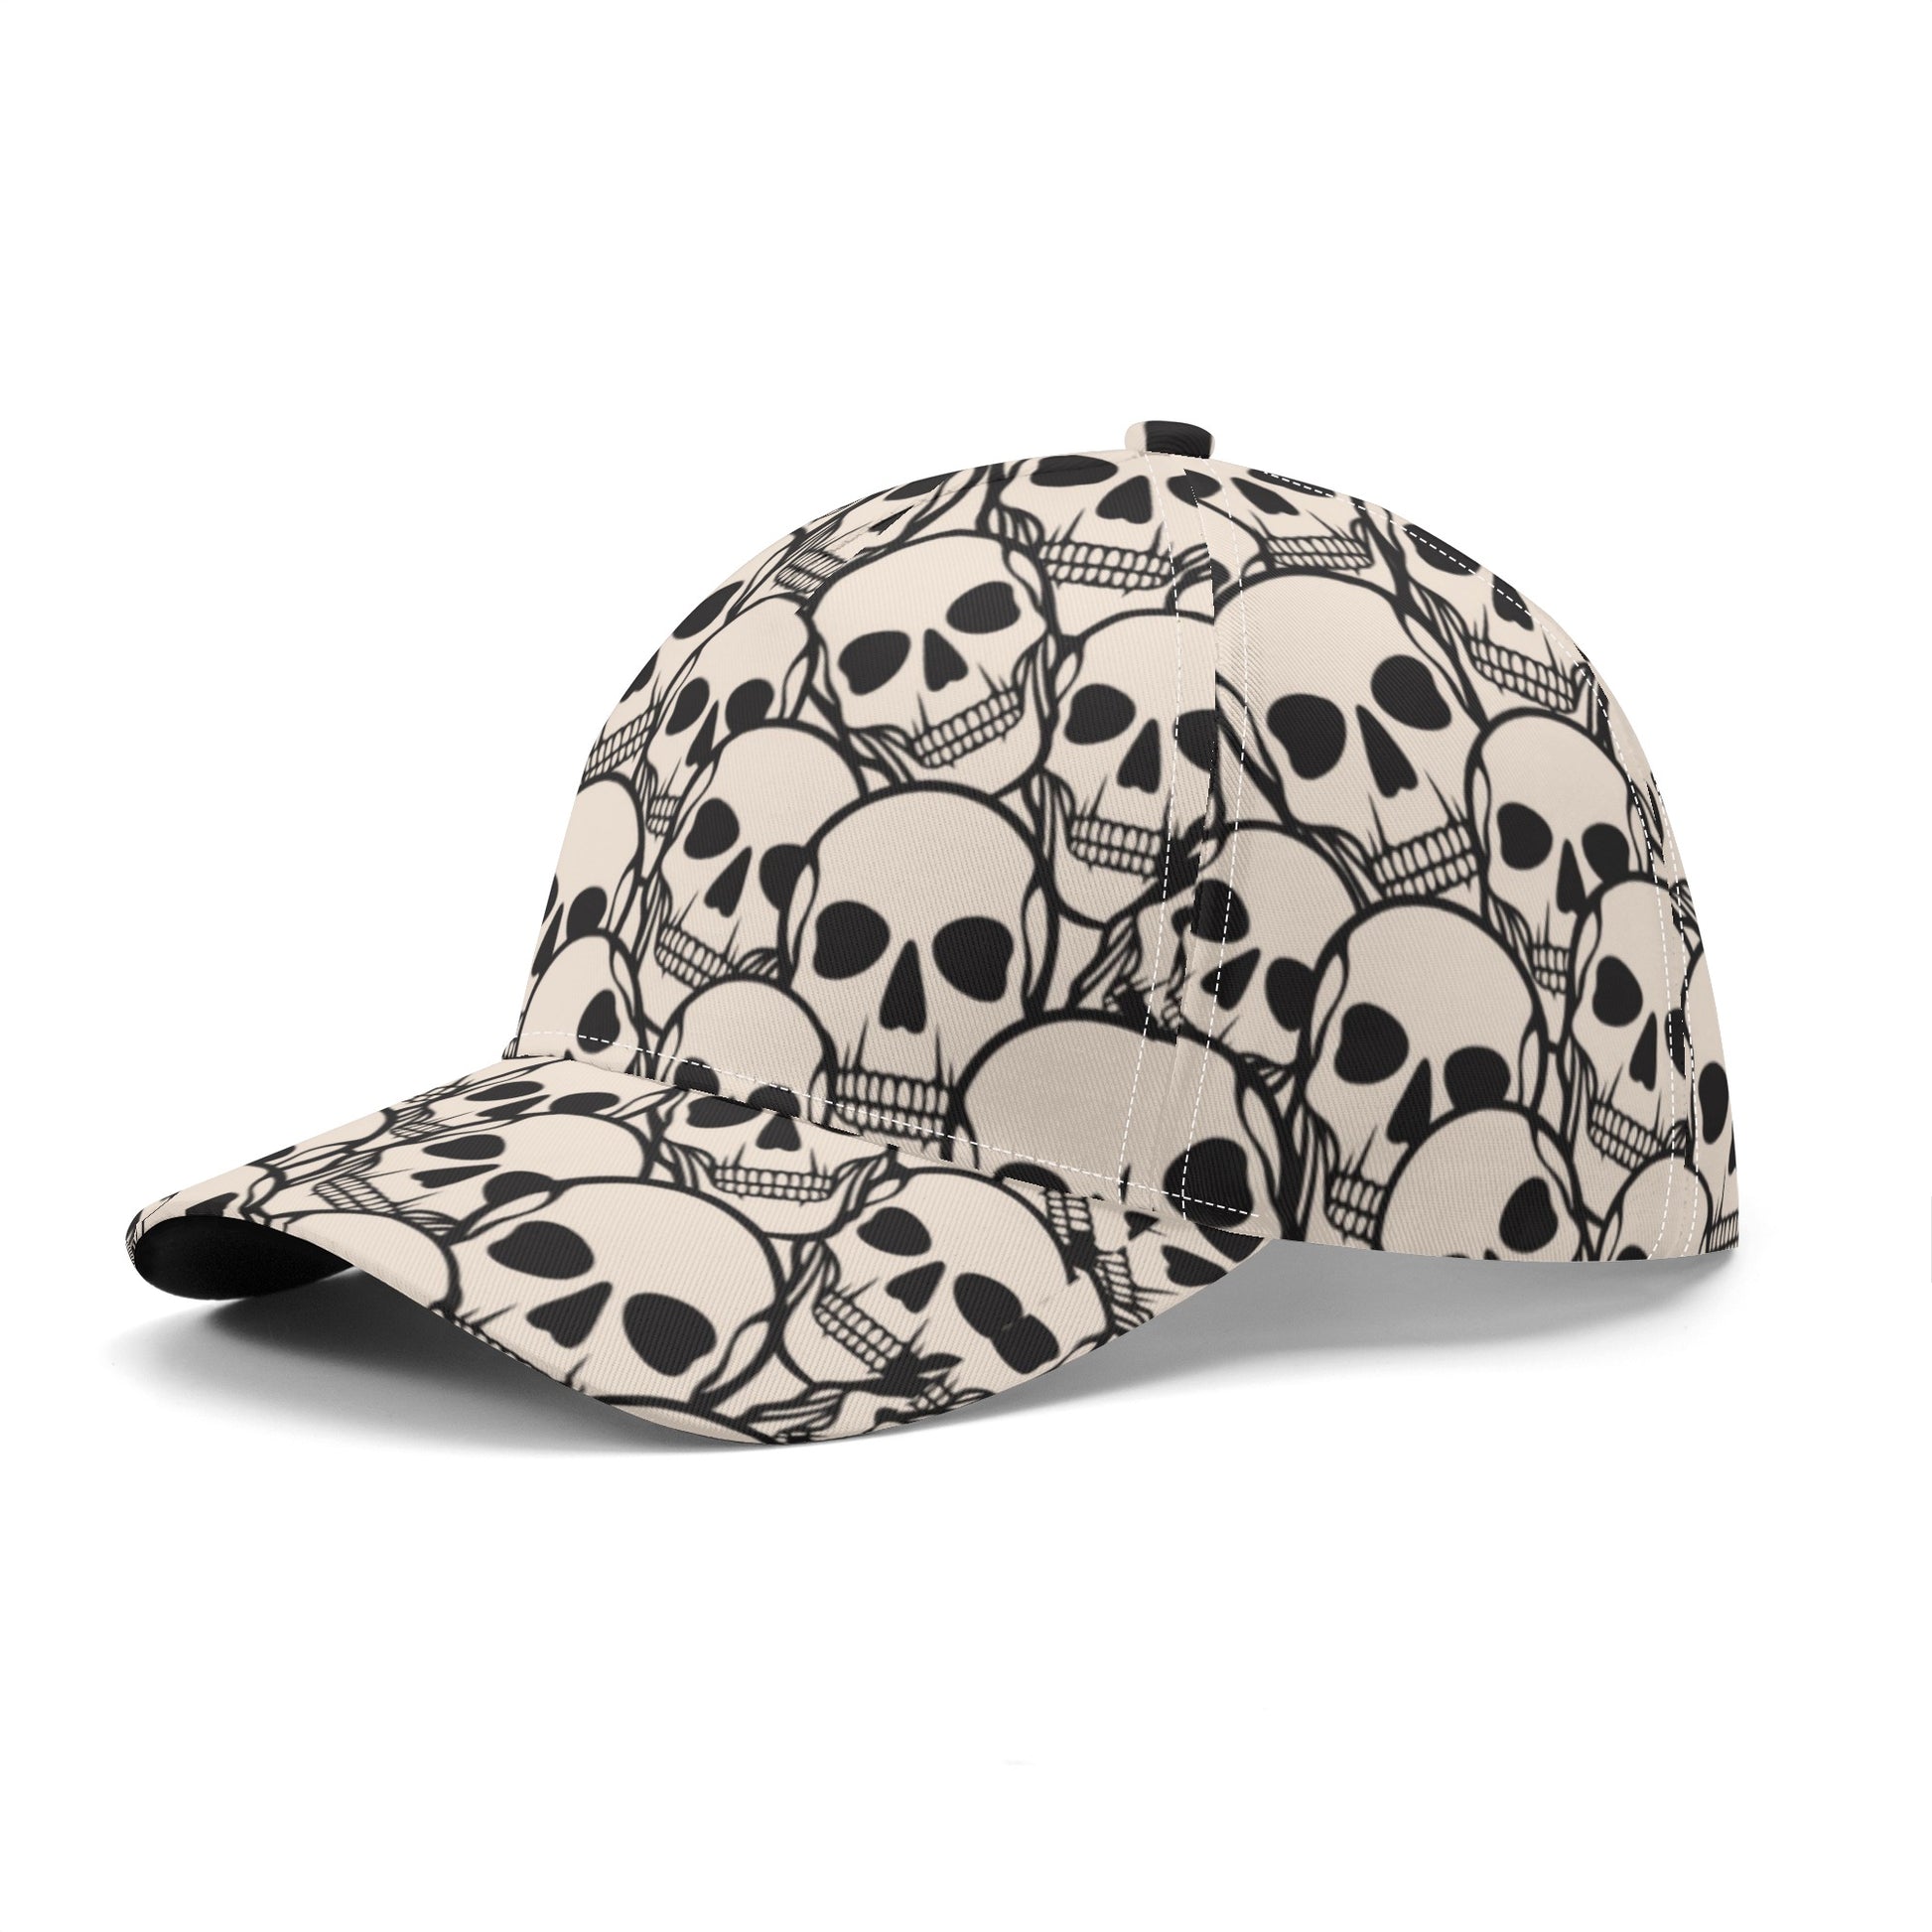 Skull Heads Baseball Caps